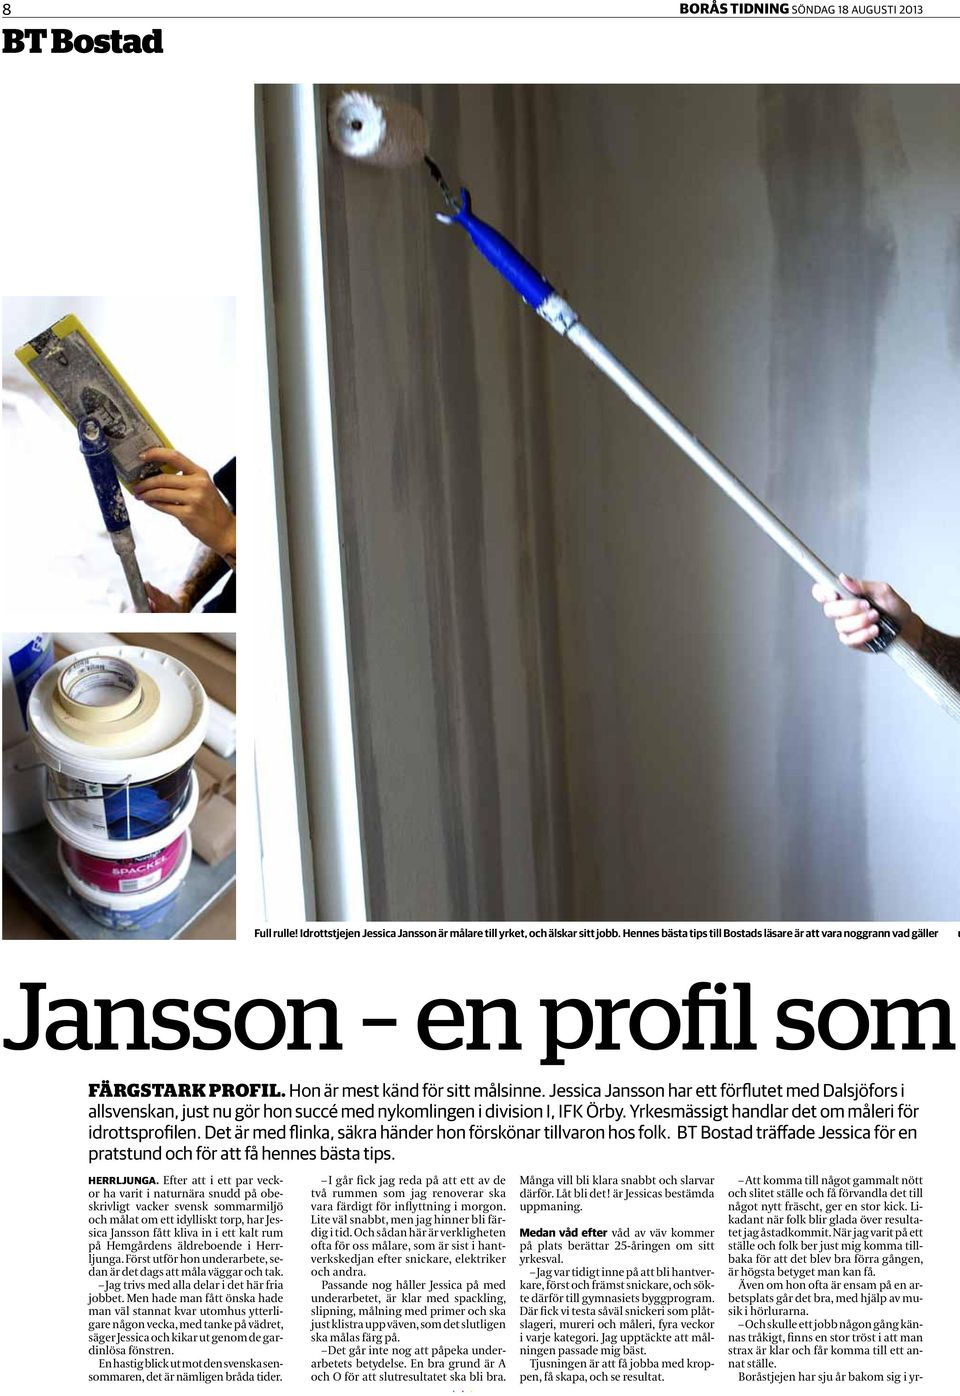 Jessica Jansson har ett förflutet med Dalsjöfors i allsvenskan, just nu gör hon succé med nykomlingen i division I, IFK Örby. Yrkesmässigt handlar det om måleri för idrottsprofilen.